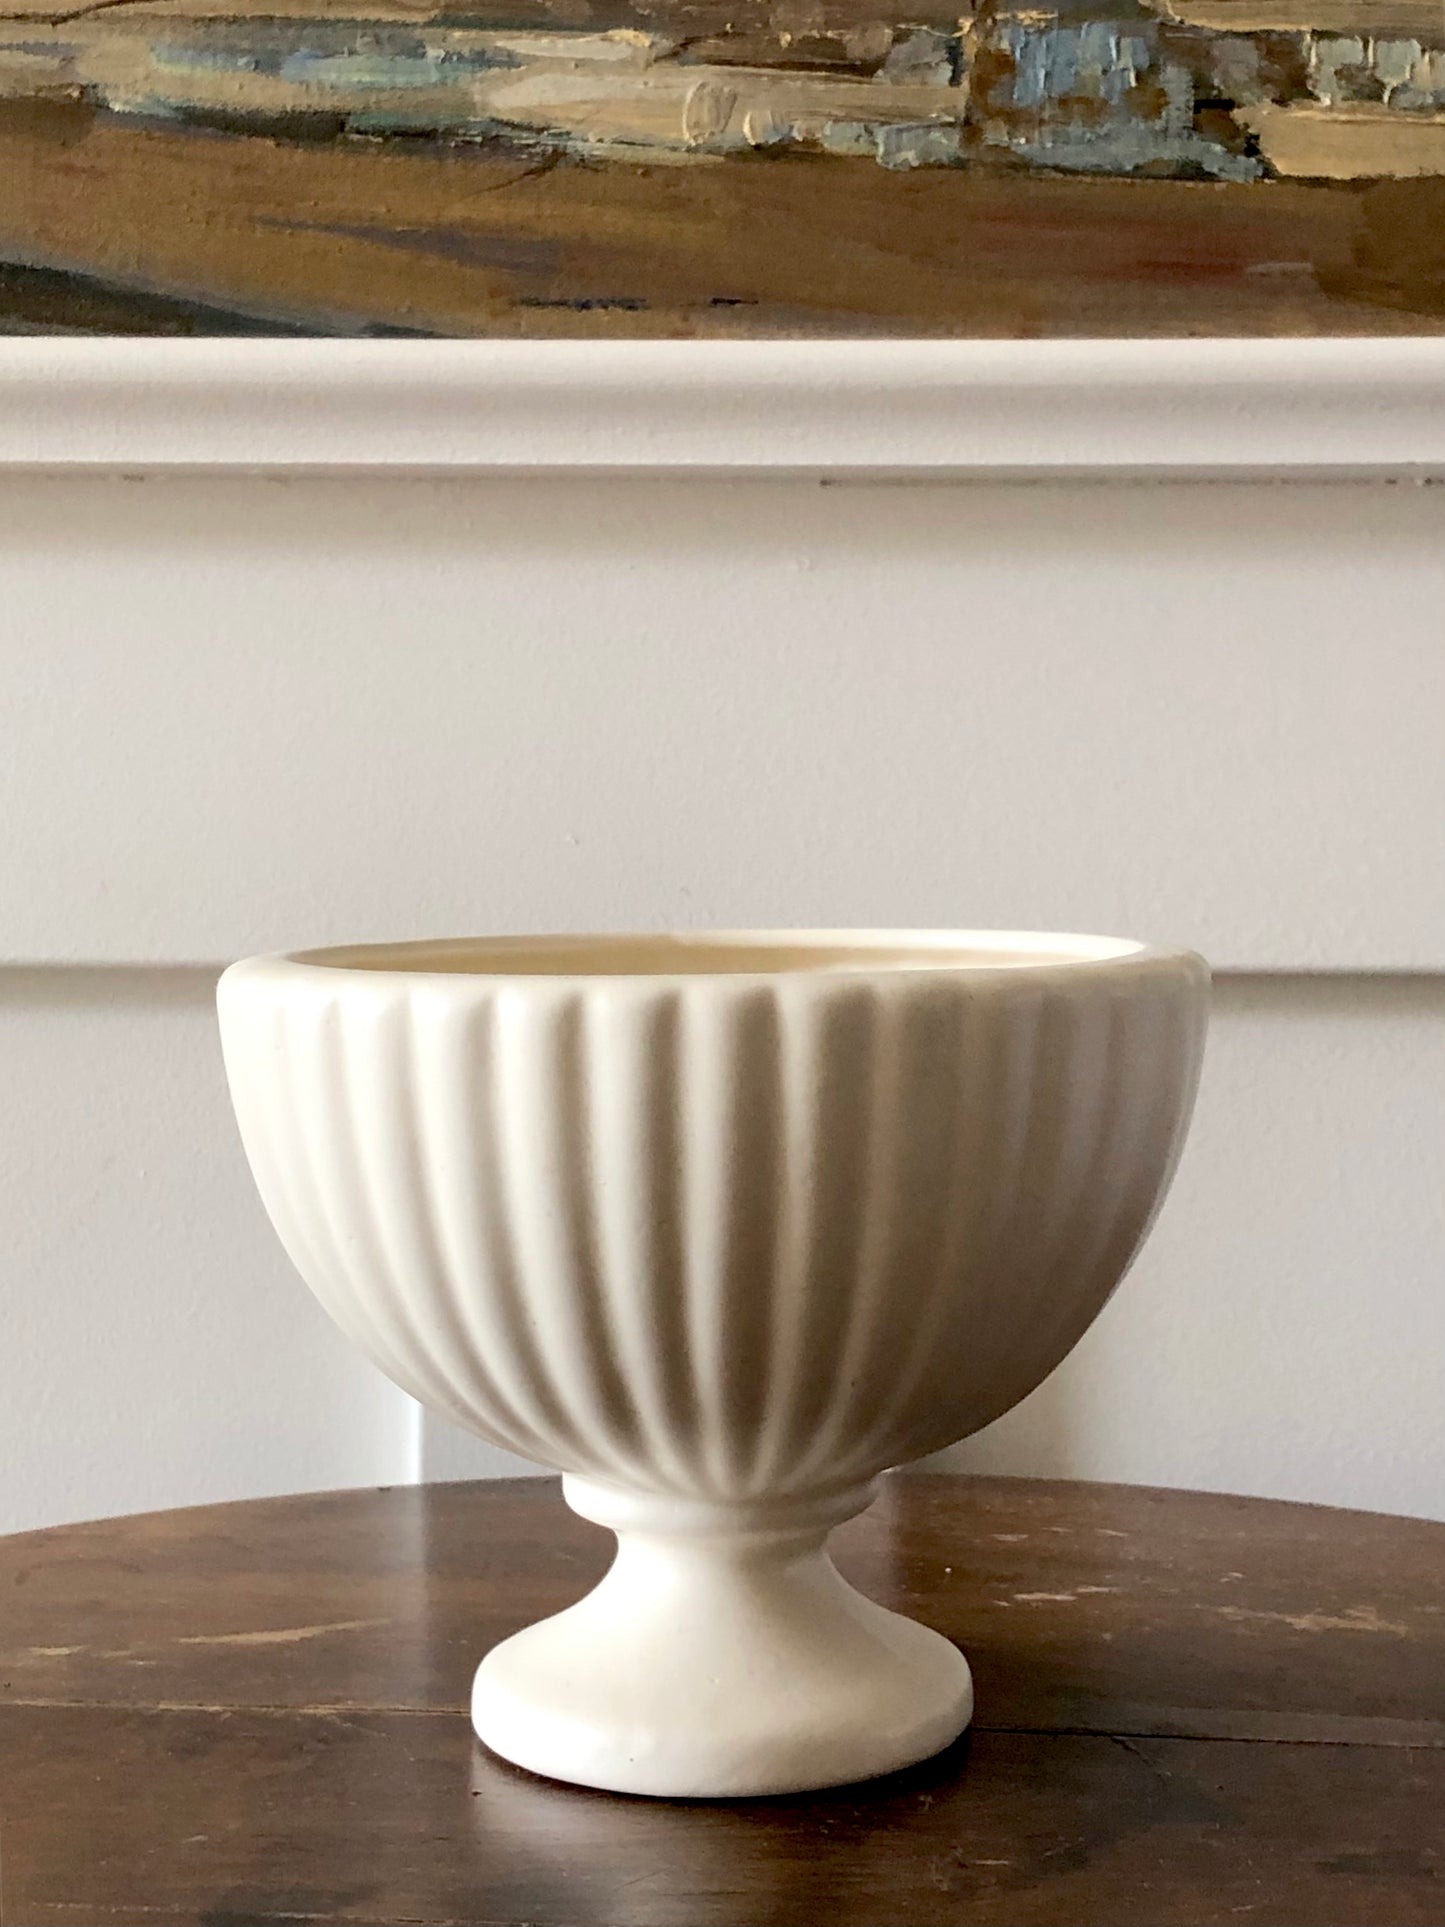 vintage Haeger pottery pedestal vase or planter